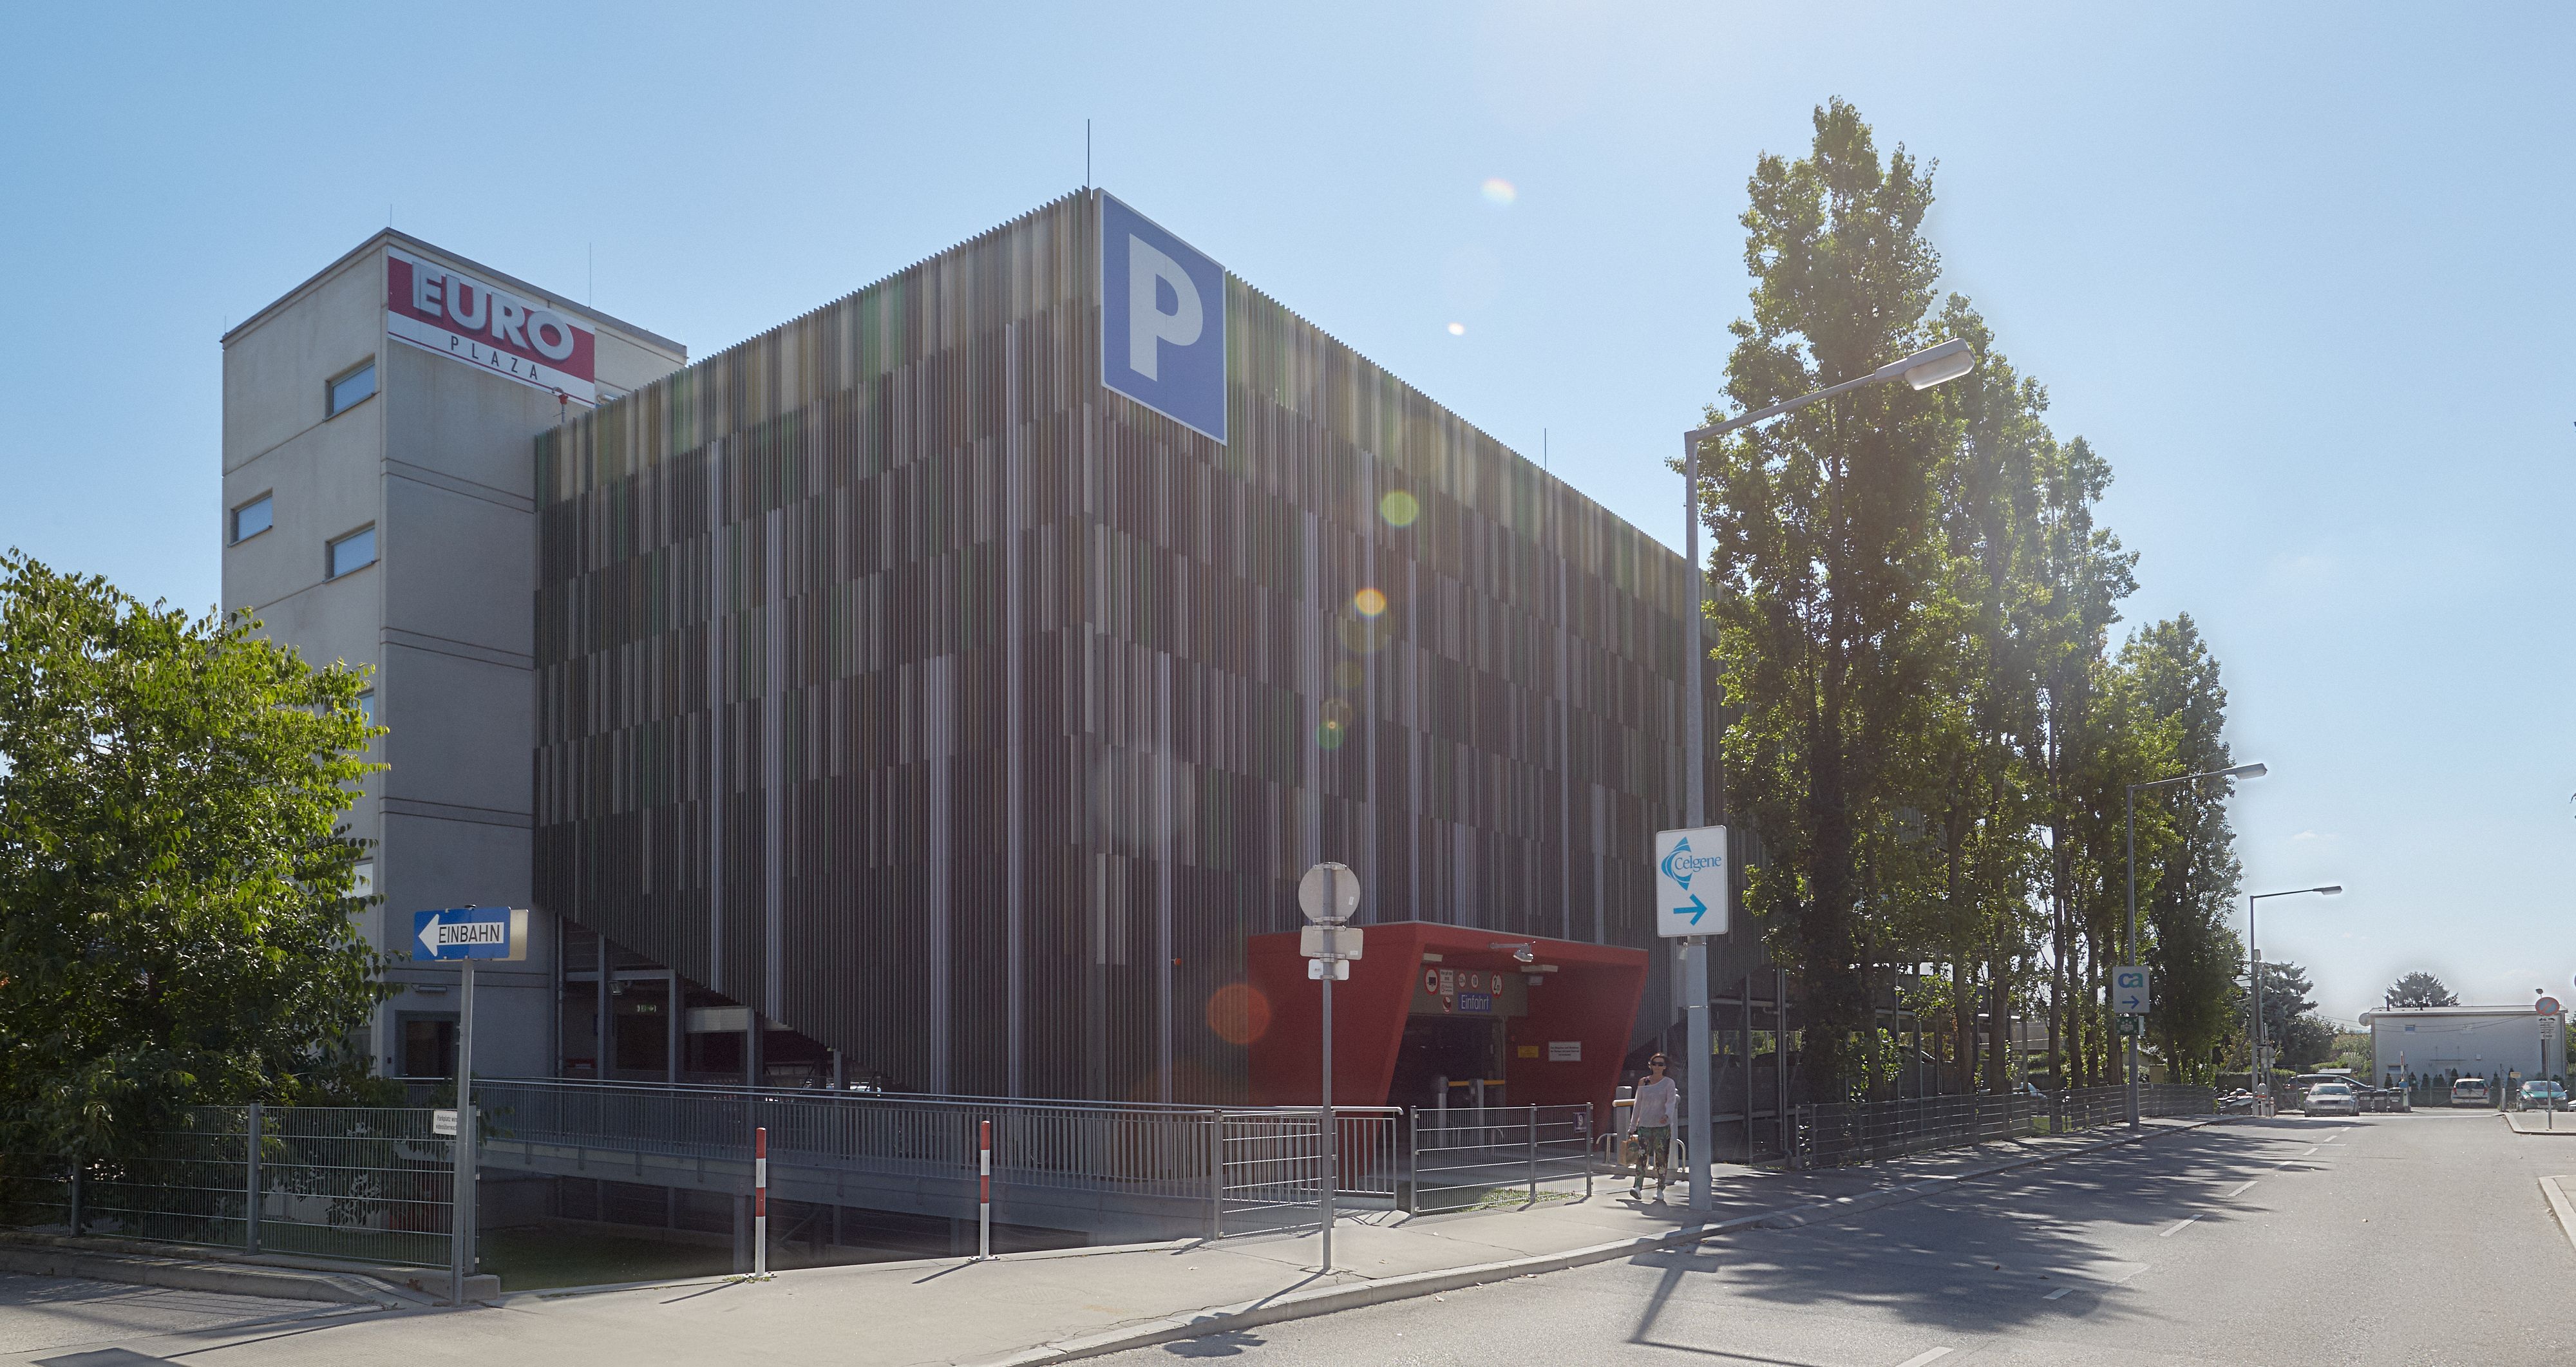 Foto: mehrgeschoßiges Parkhaus verdeckt hinter einer Fassade aus unzähligen vertikal ausgerichteten Paneelen; hochgewachsene Pappeln im Vordergrund 